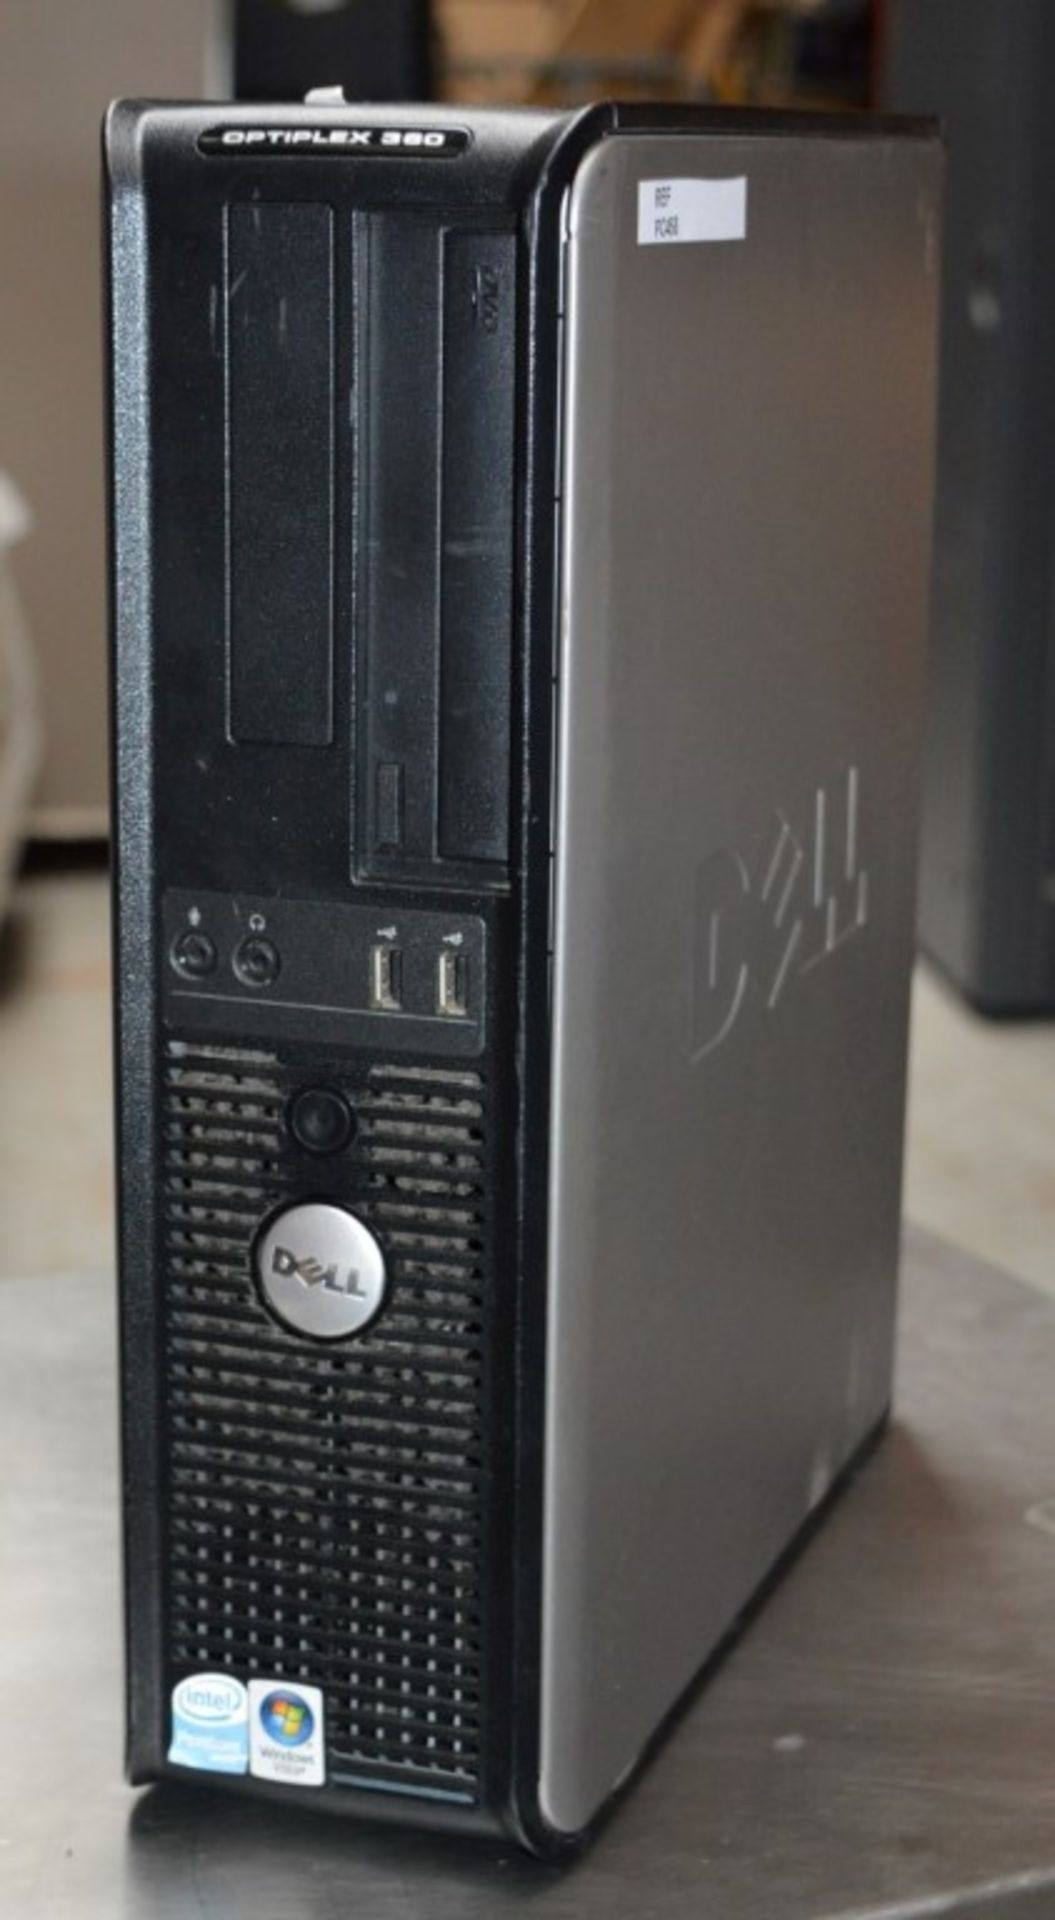 1 x Dell Optiplex 360 Desktop Desktop Computer - Intel Pentium D Dual Core Processor, 2gb Ram and